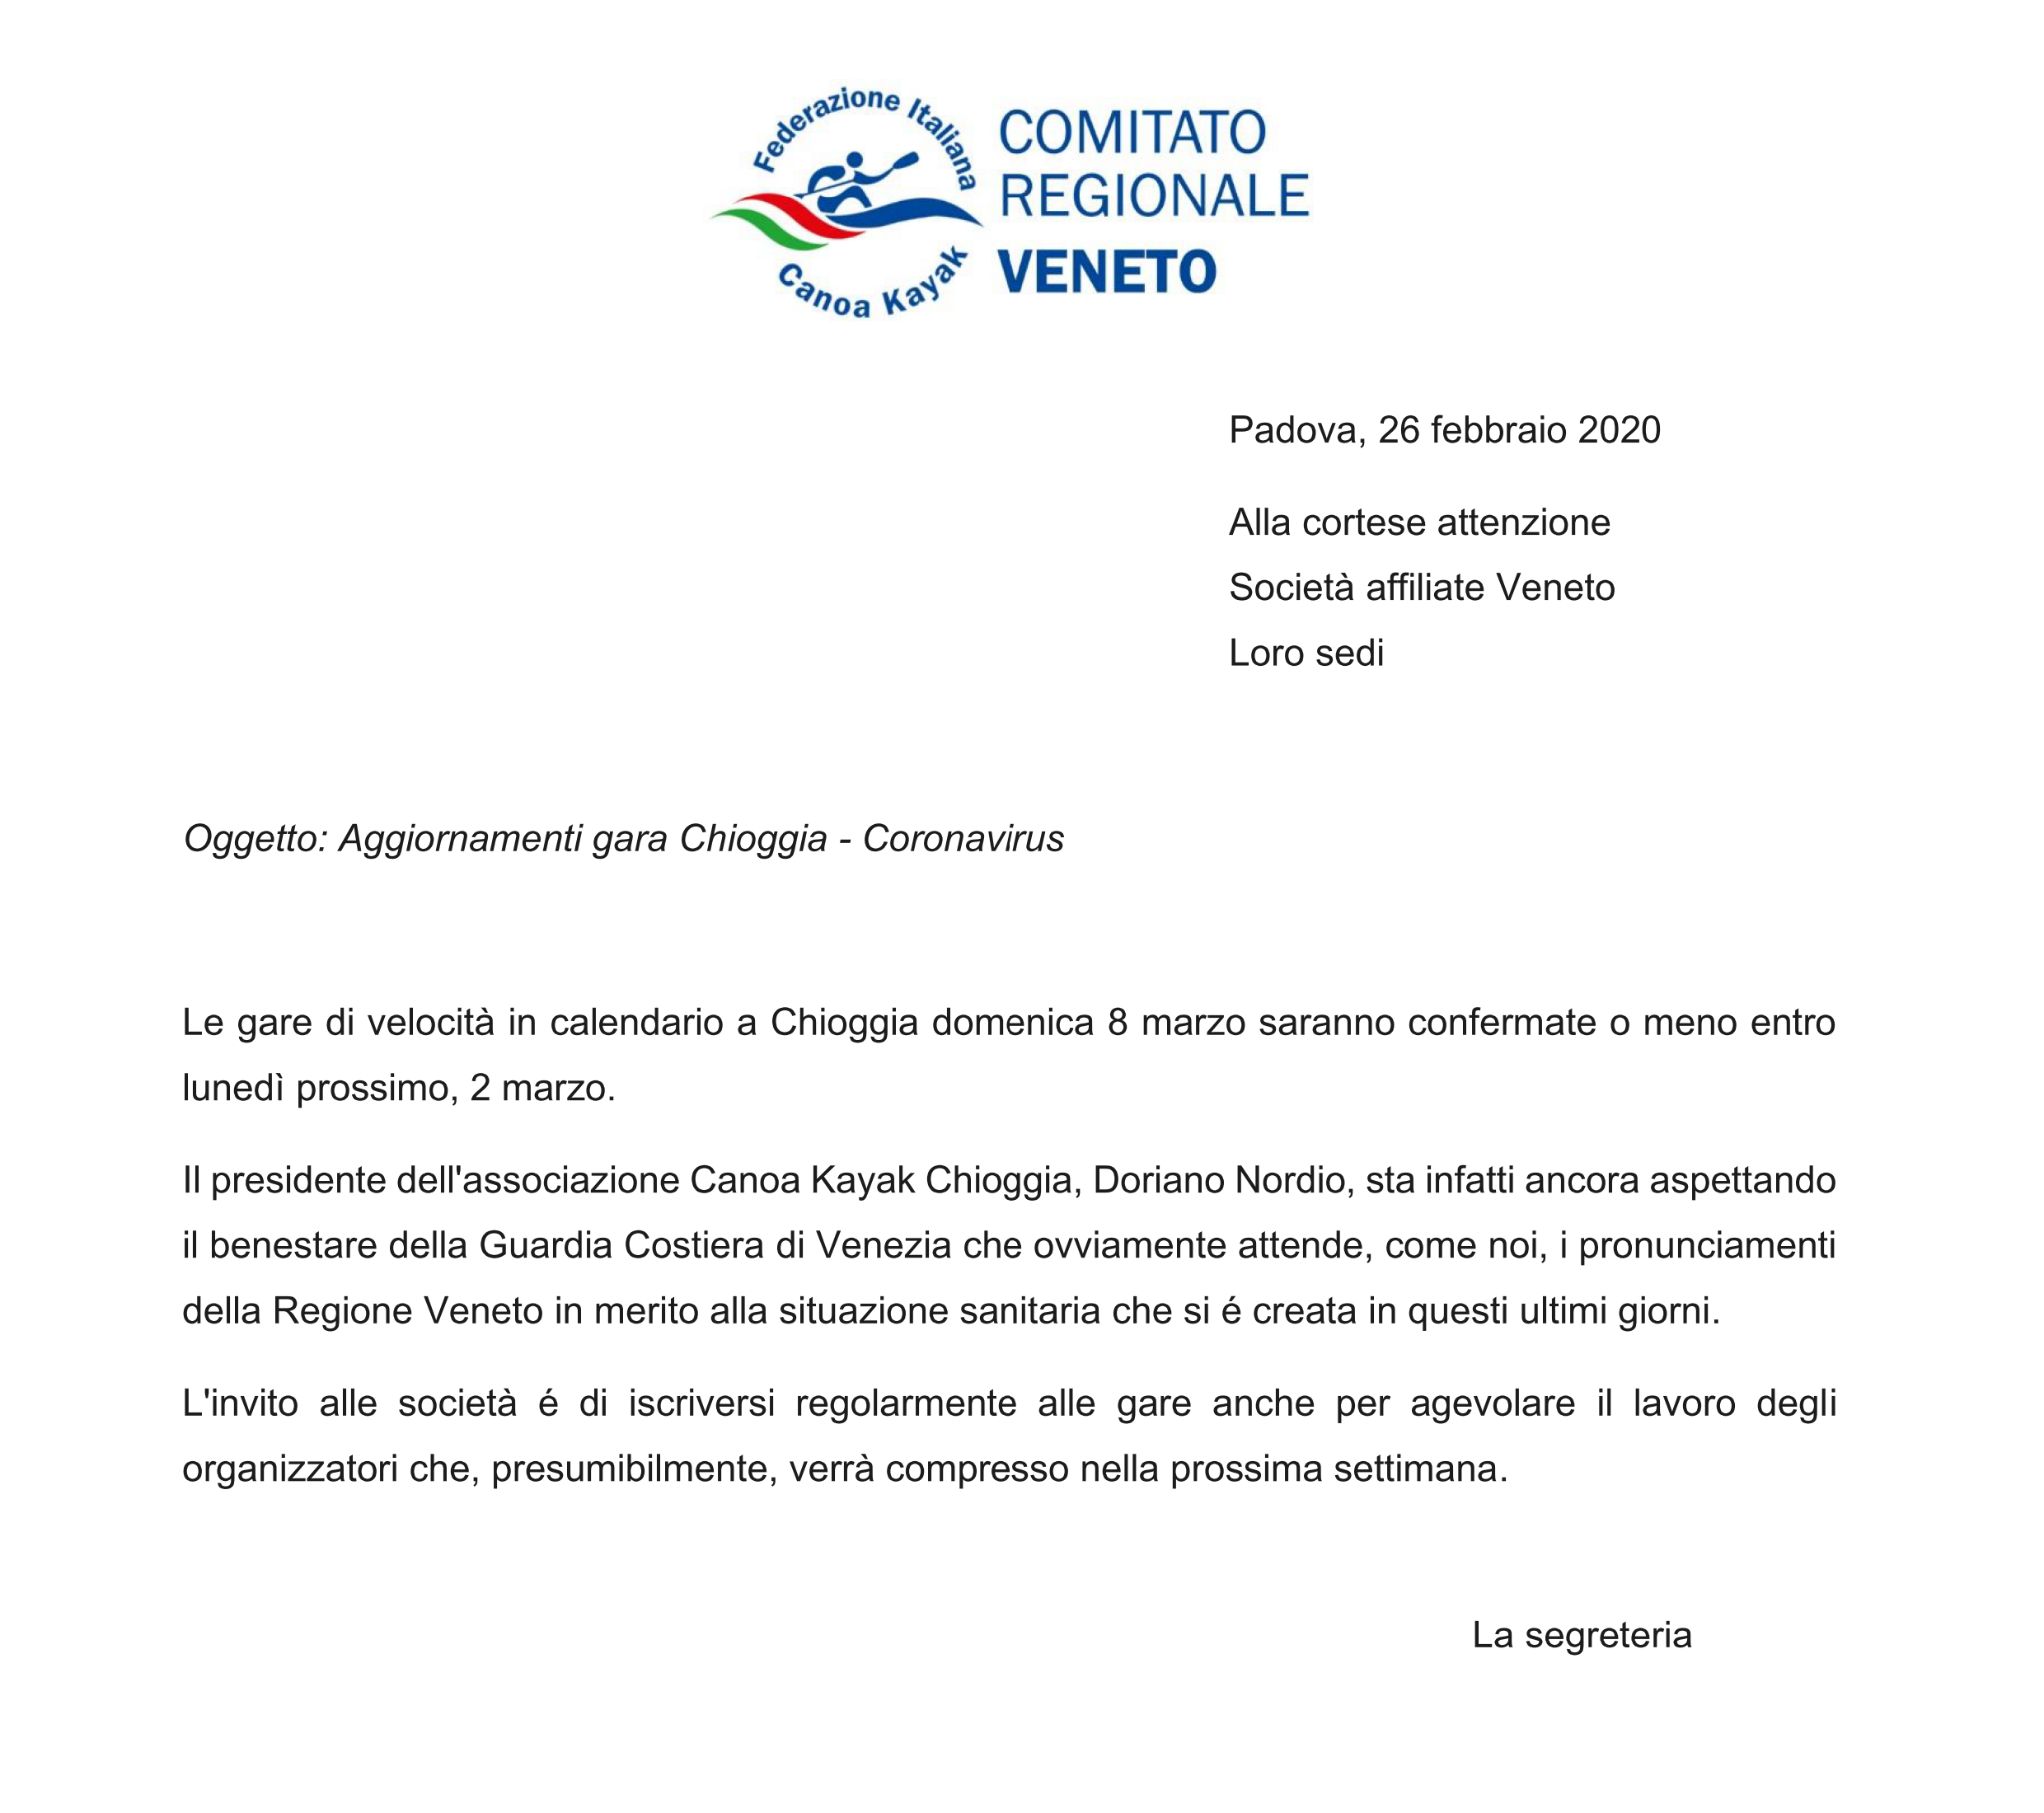 images/comitatiregionali/veneto/2020/bacheca/Aggiornamenti_Chioggia_01.png